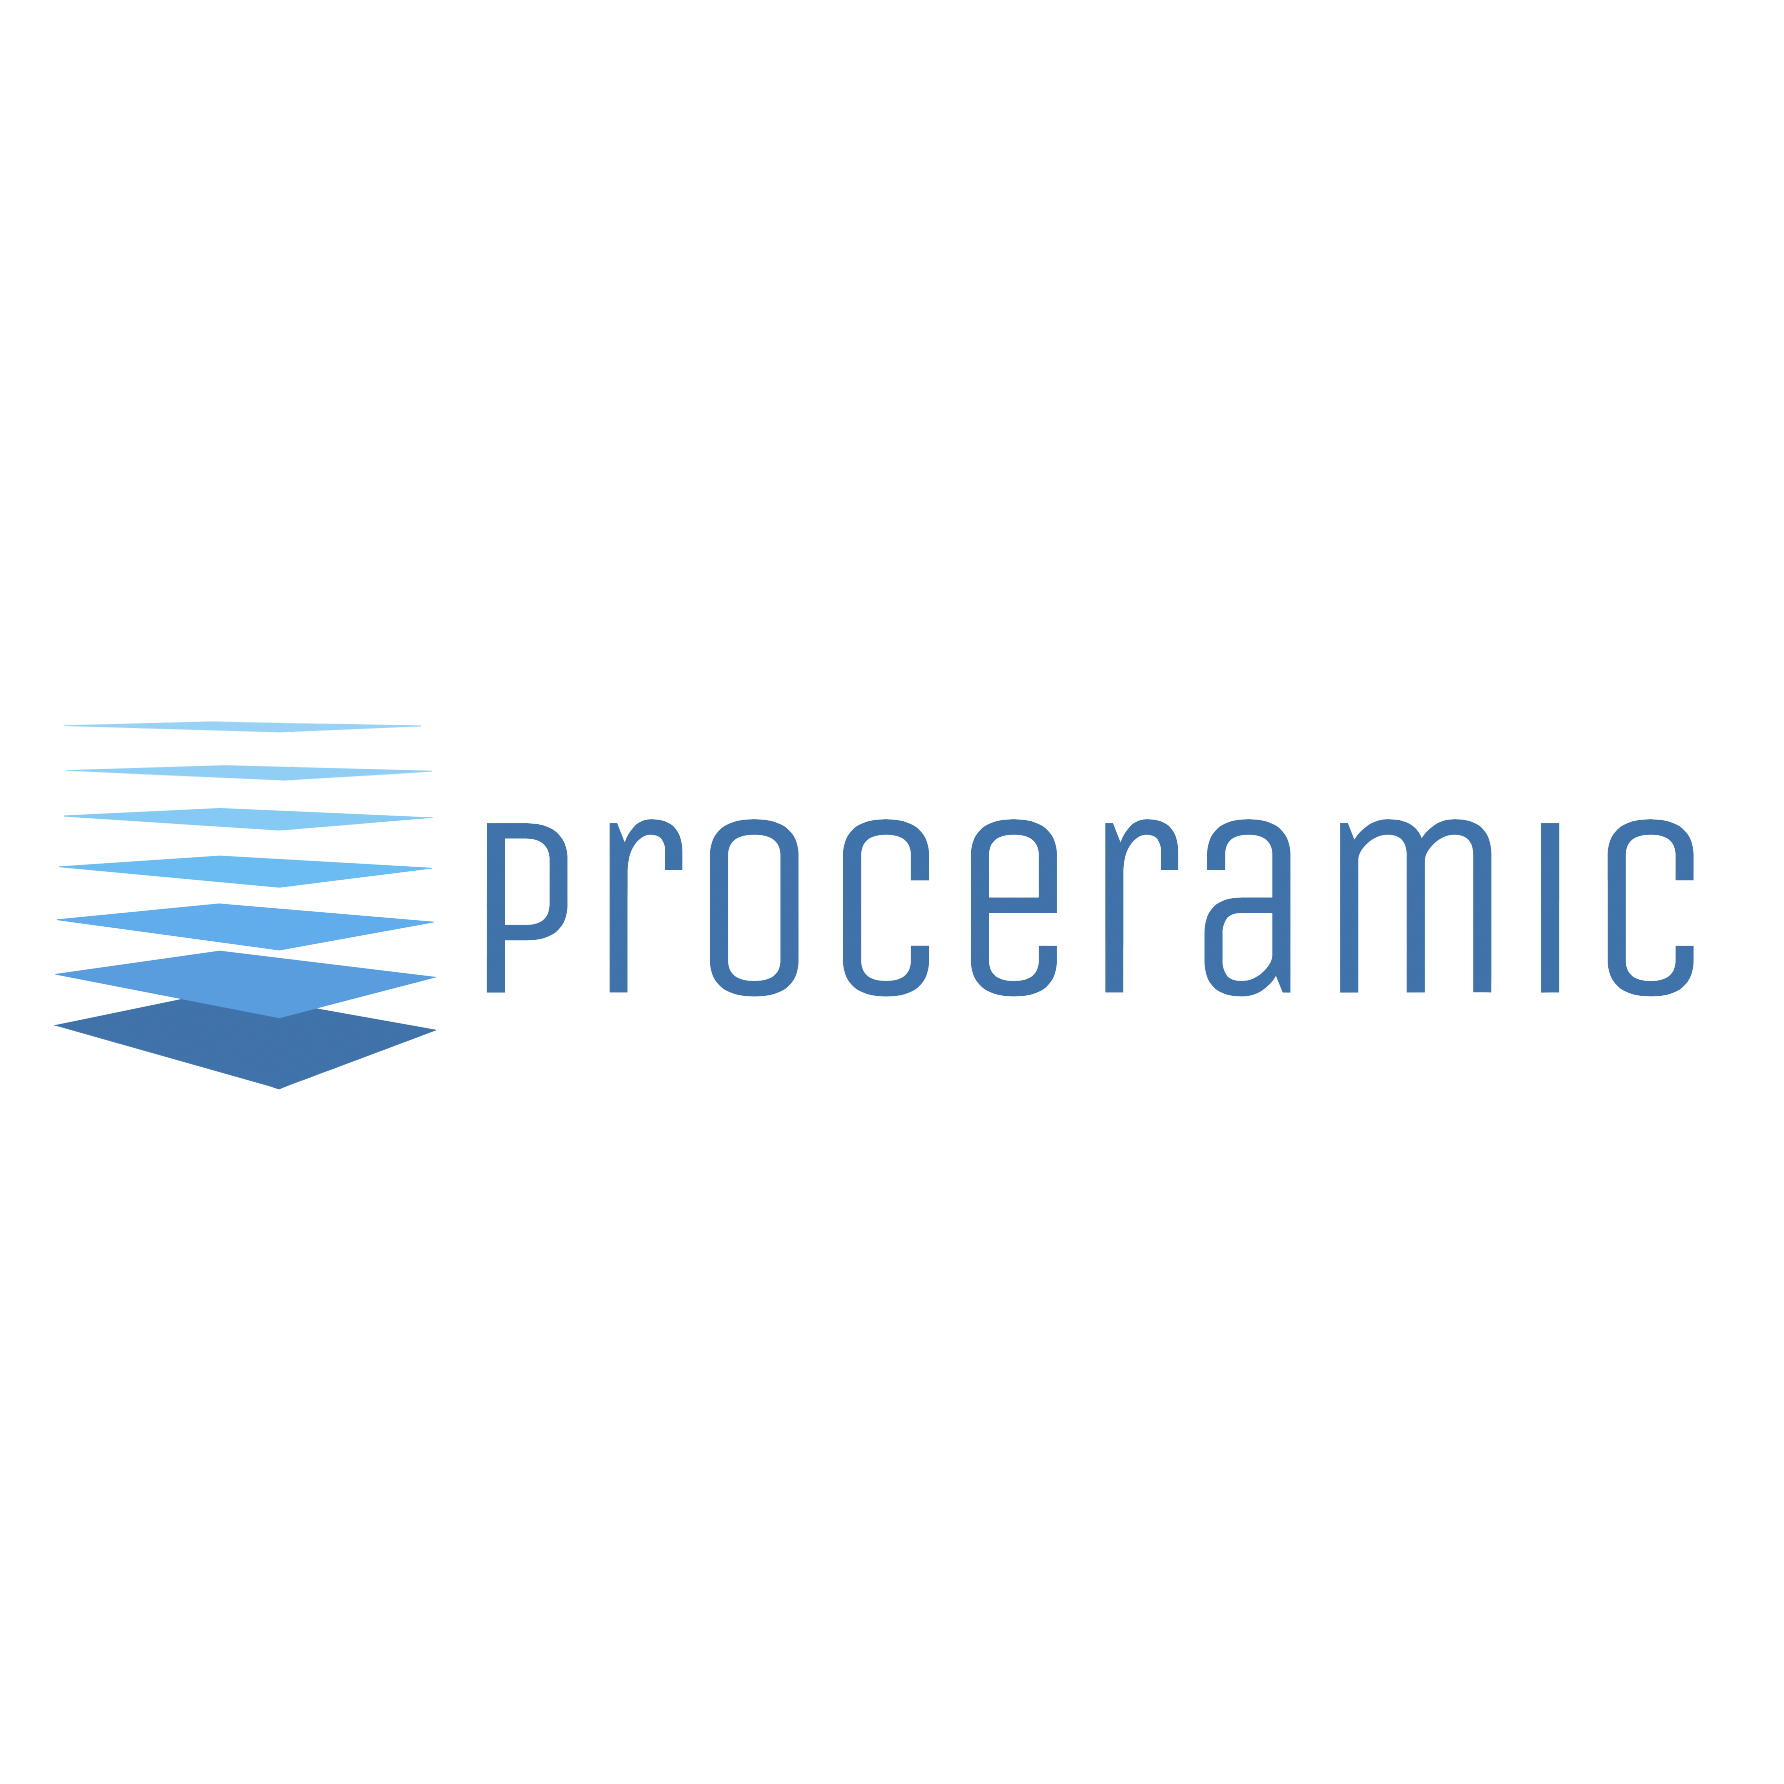 Proceramic SL Logo